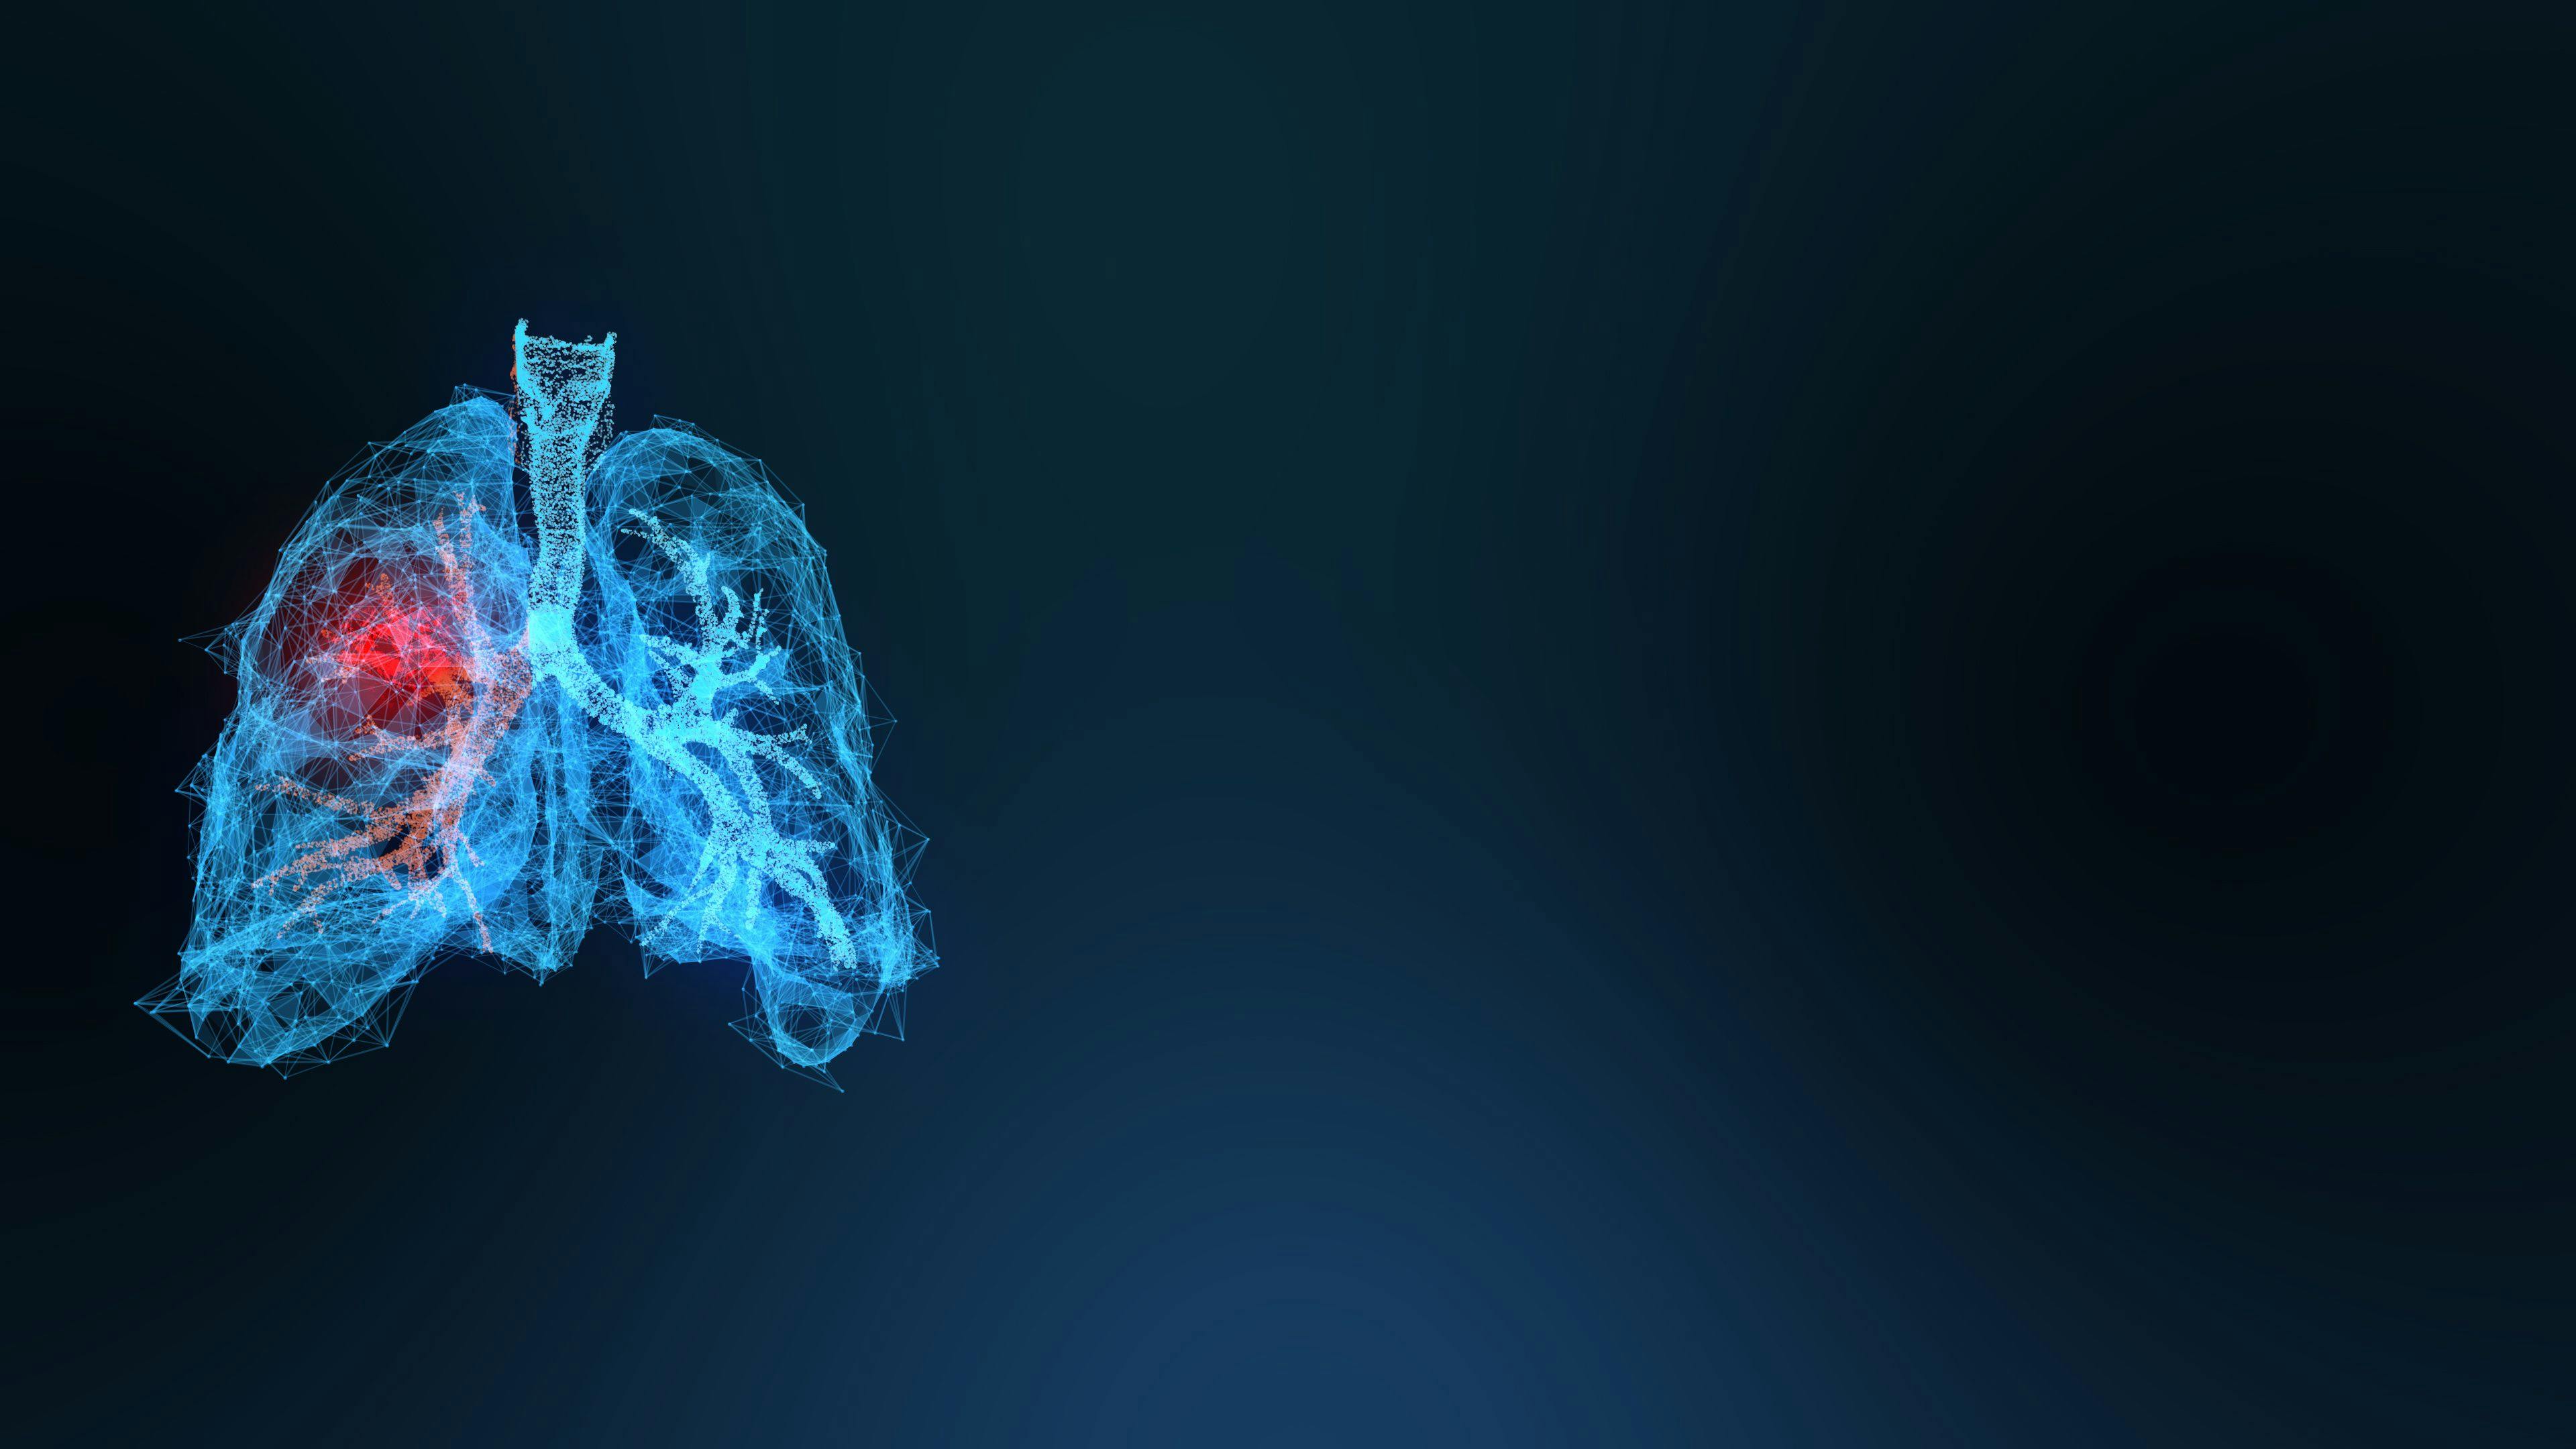 Image credit: appledesign | stock.adobe.com. 3d rendered illustration of lung cancer 3D illustration